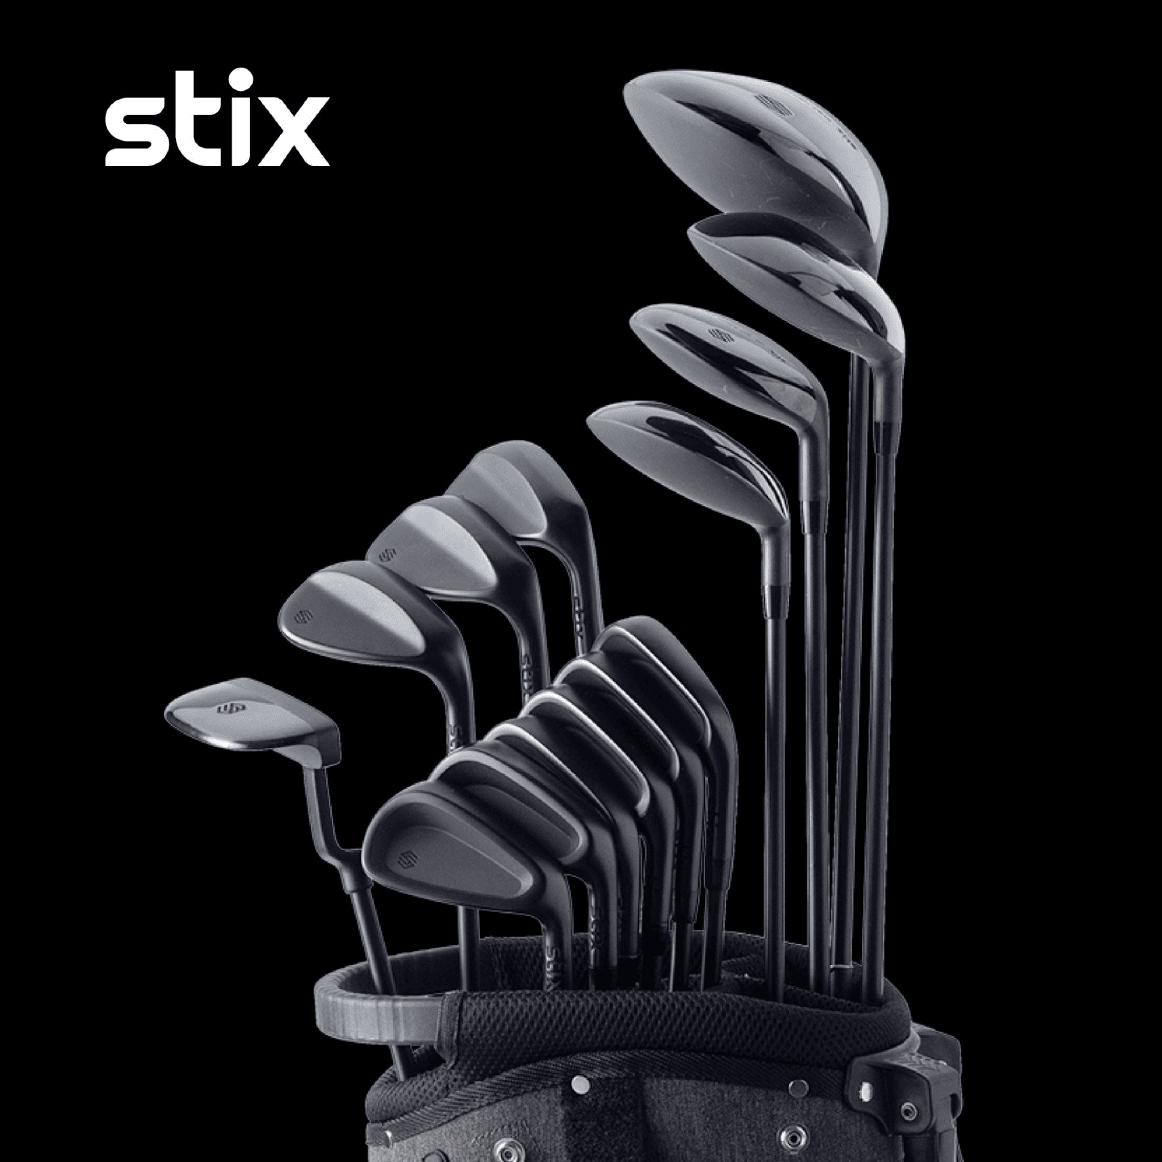 stix golf clubs